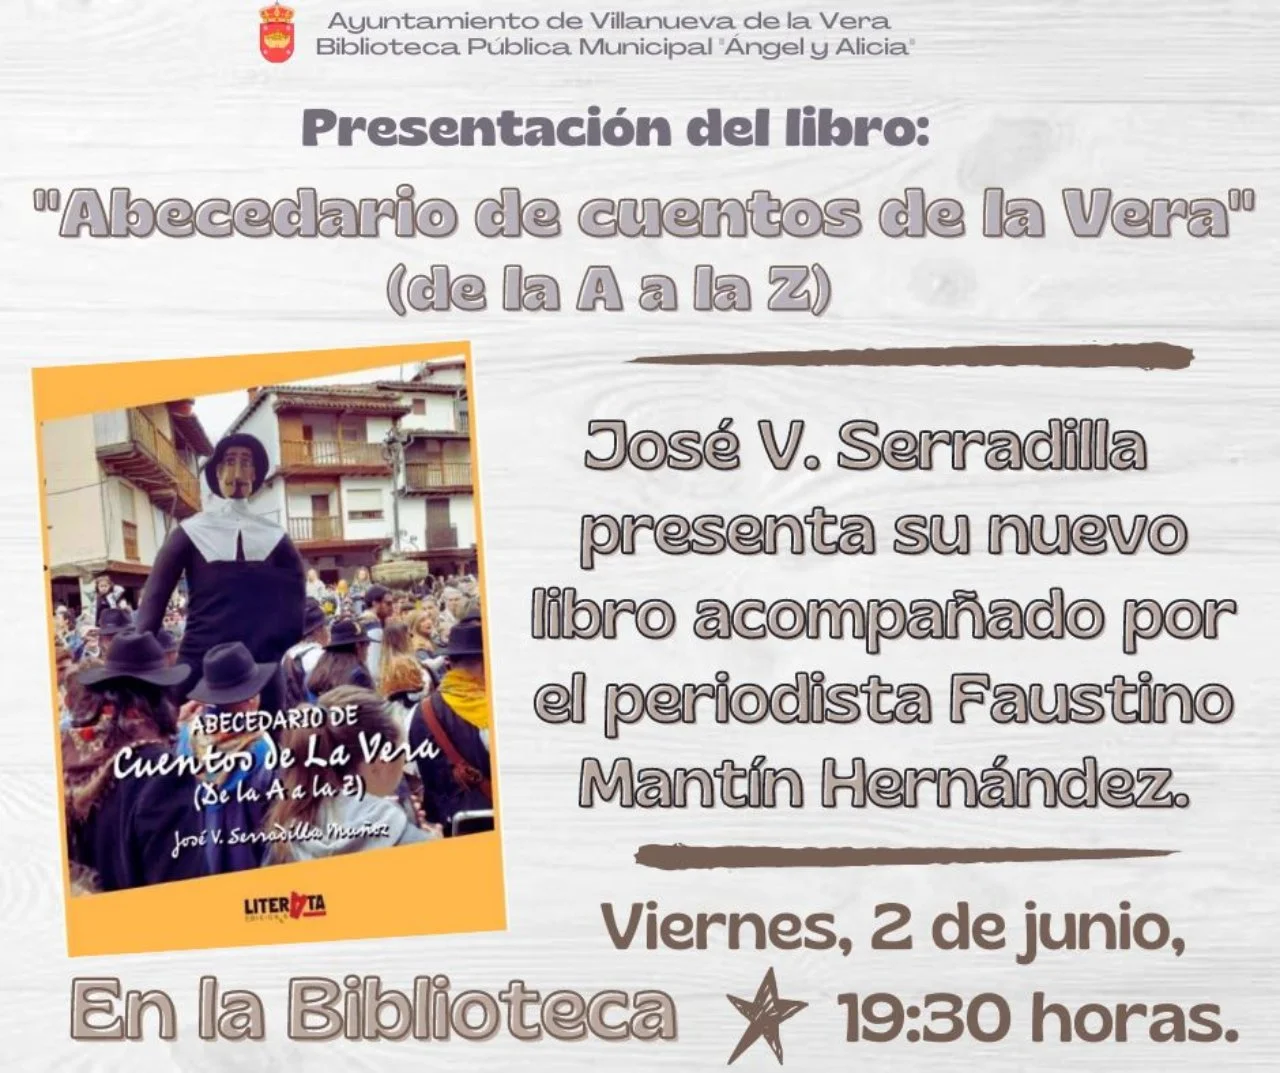 José Vicente Serradilla presenta nuevo libro en Villanueva de la Vera